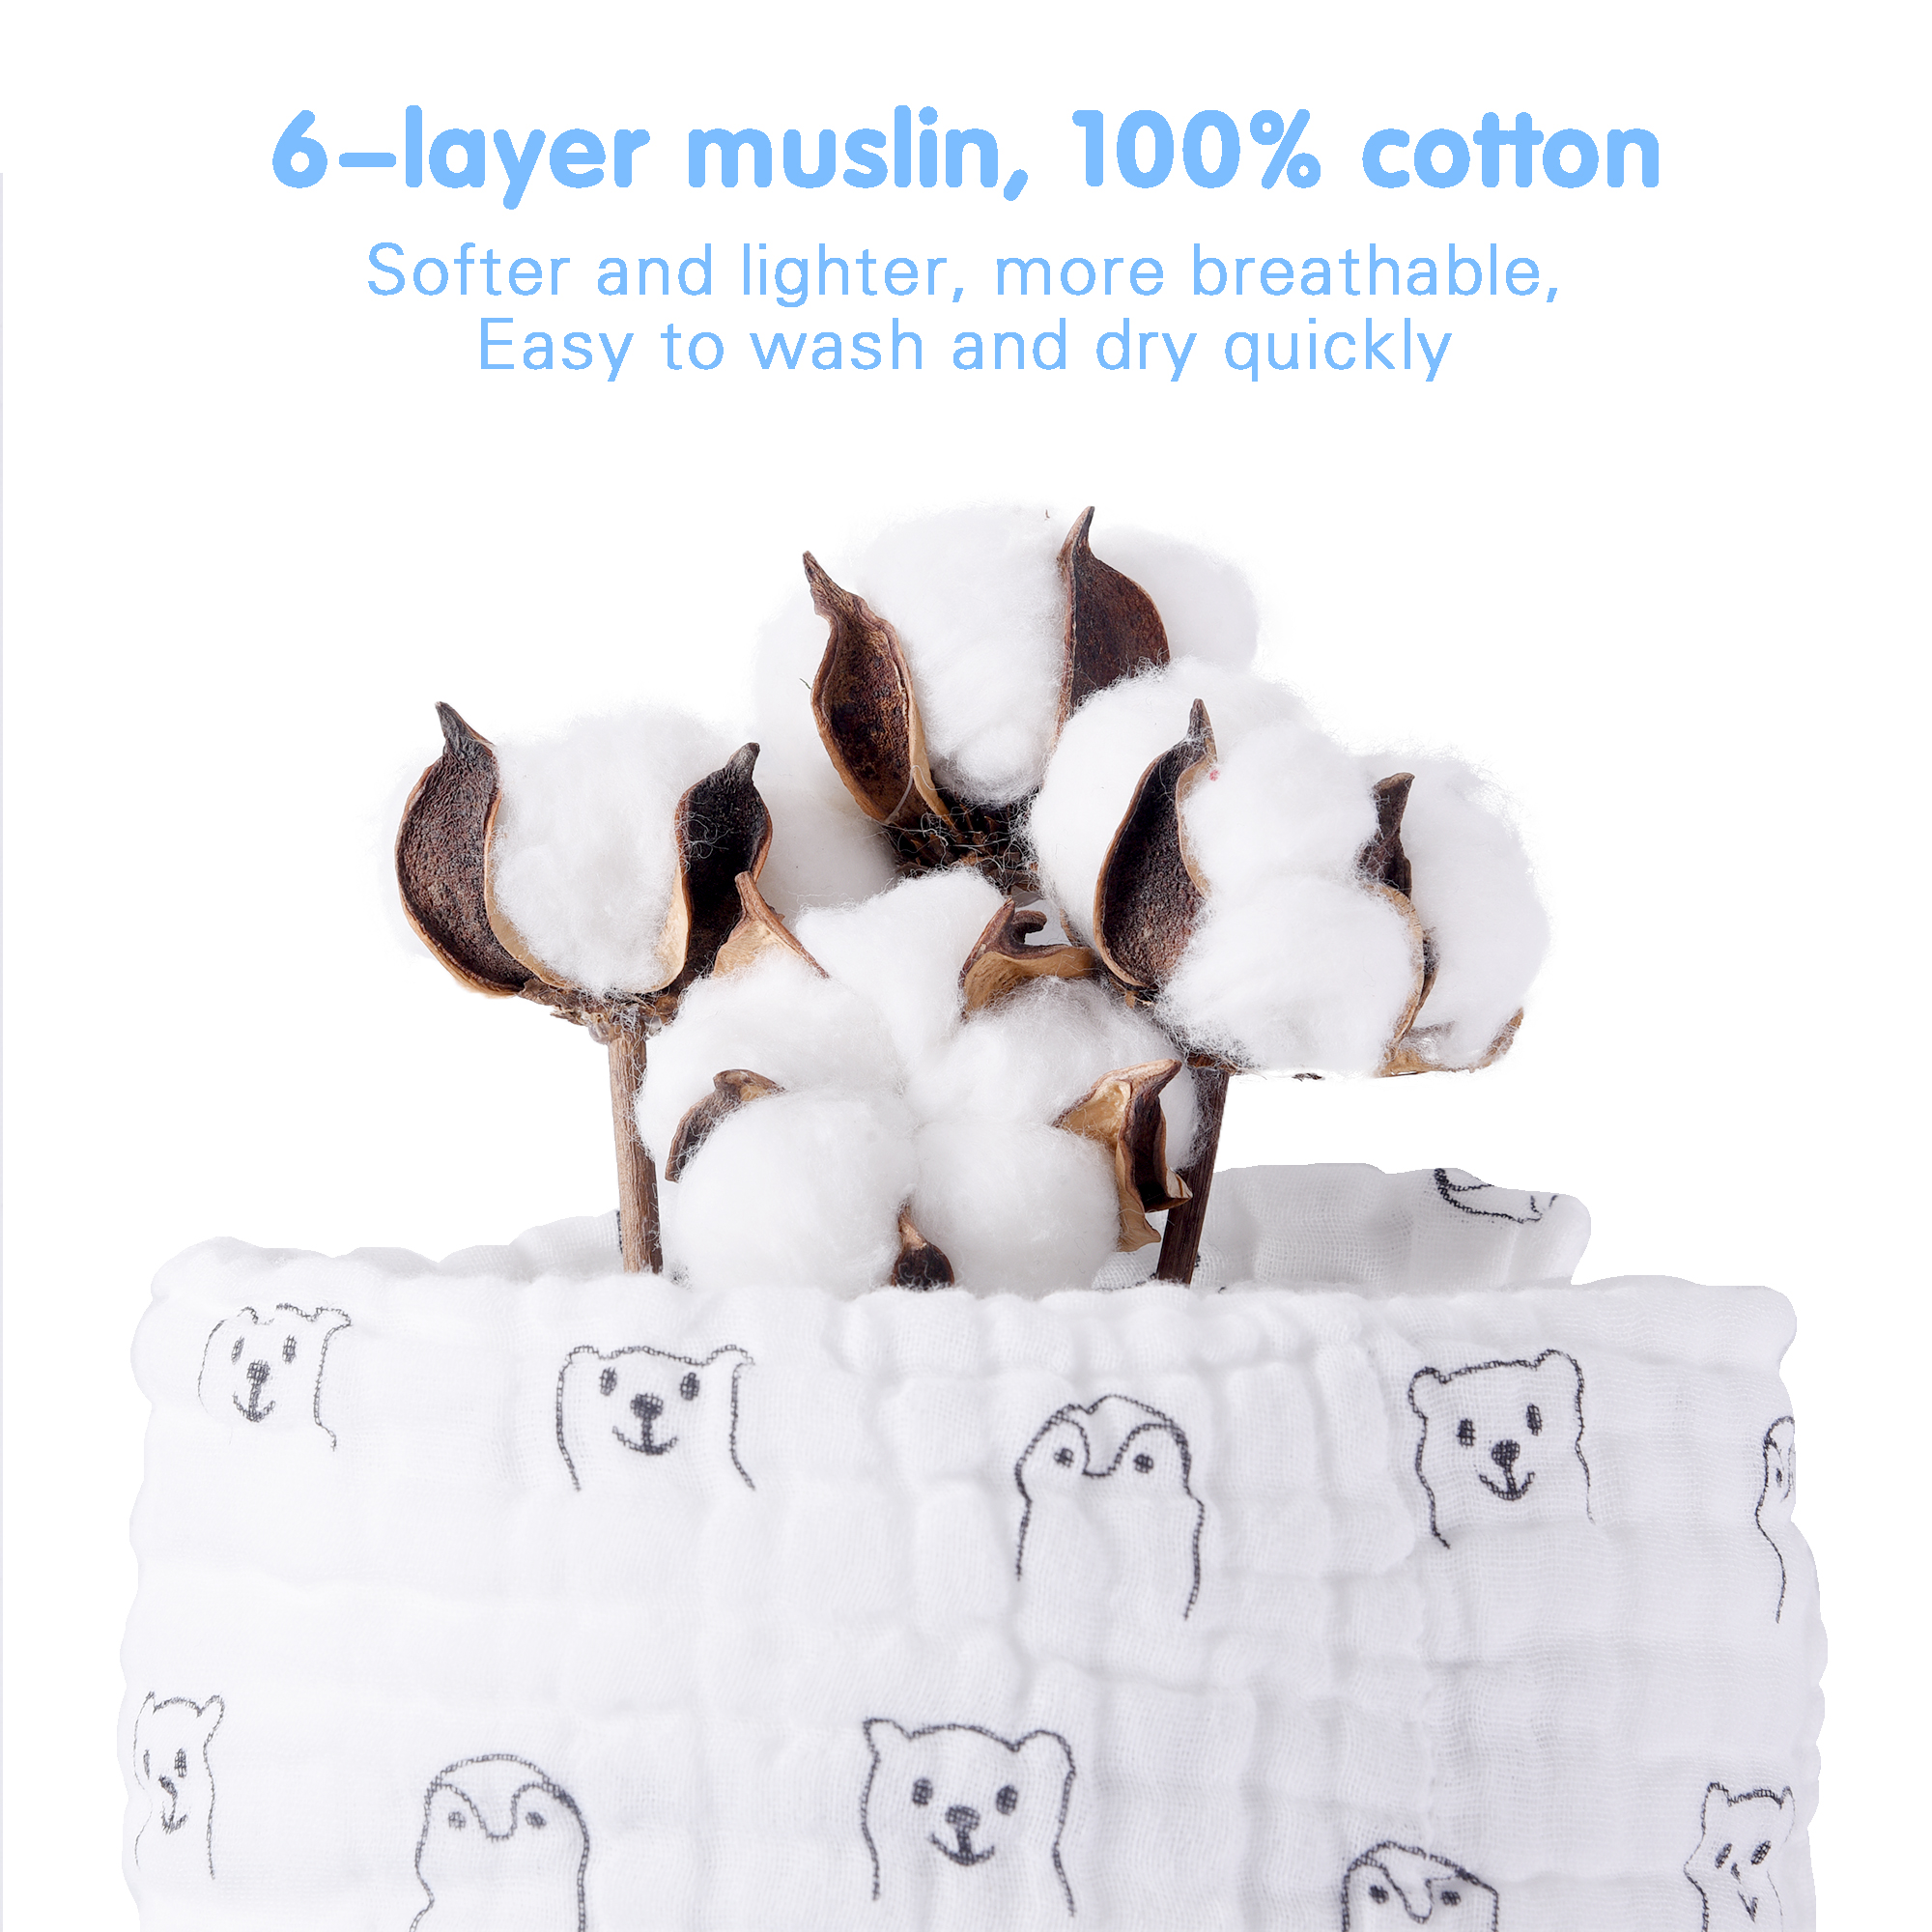 Luxurious 6-Layer Muslin Baby Burp Cloths - Super Absorbent Cotton